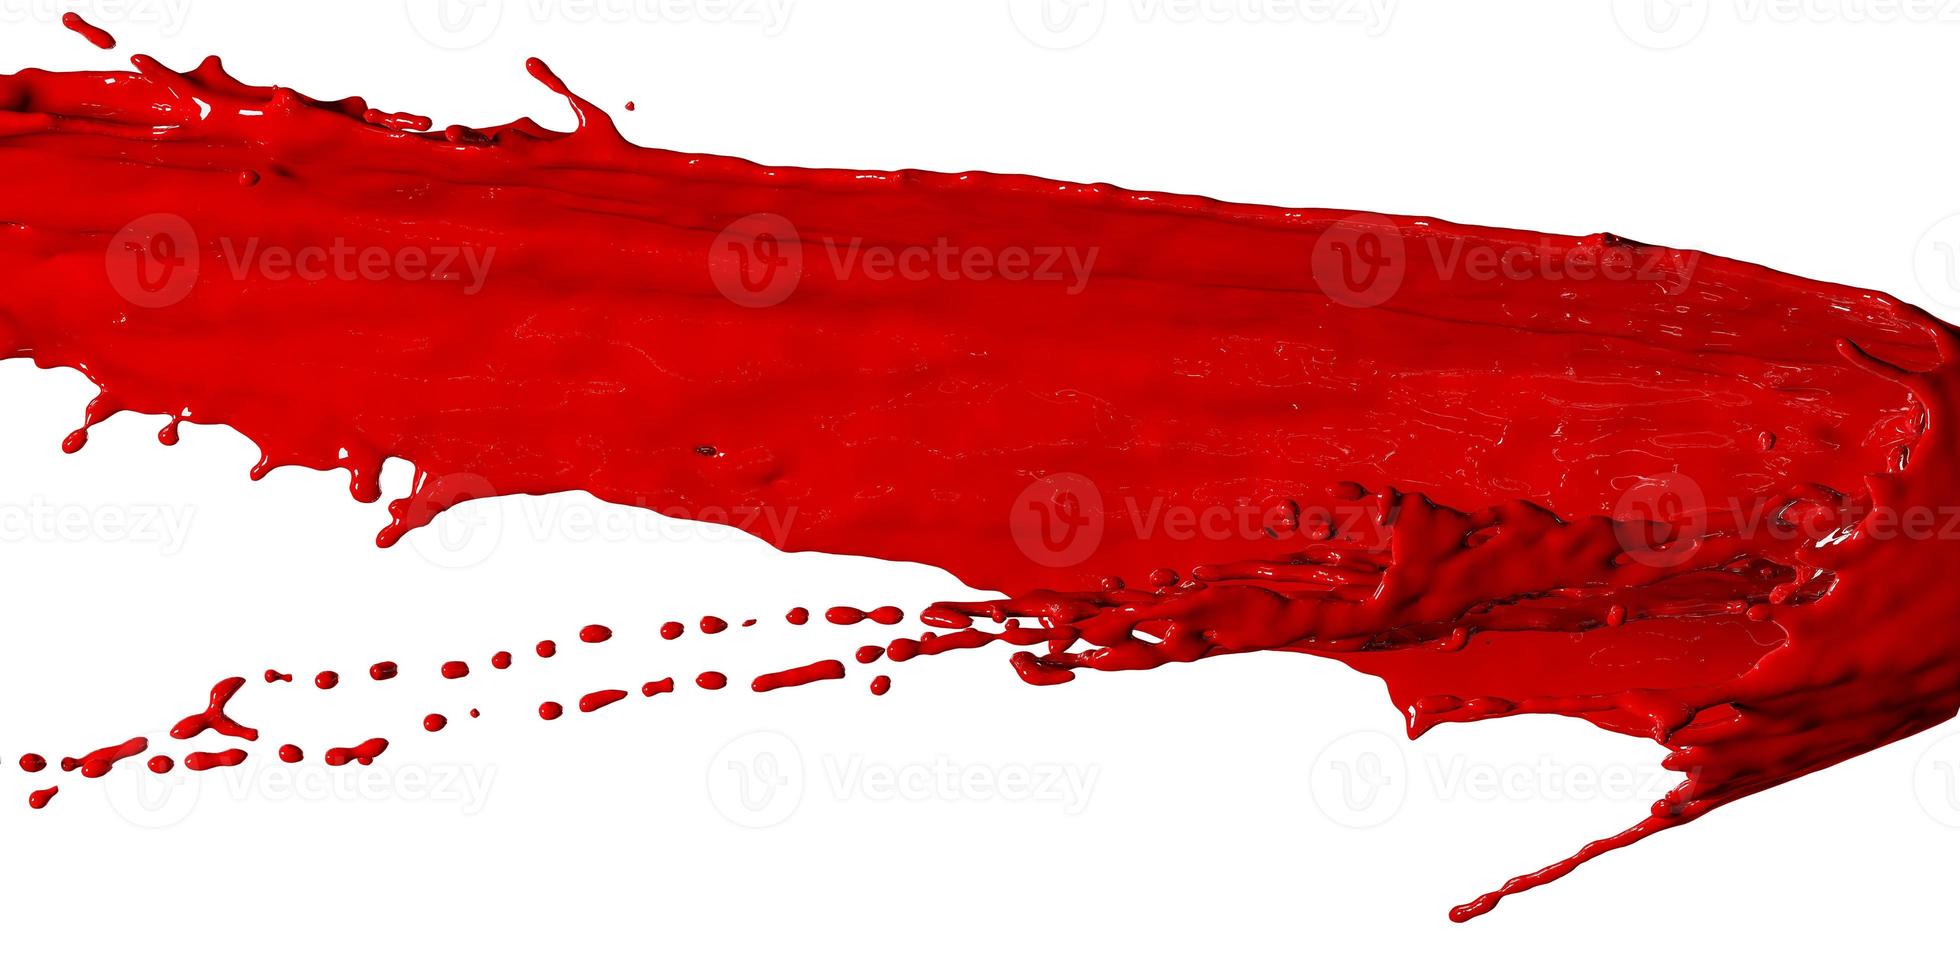 den röda vätskan stänkte som blod, abstrakt bakgrund. 3d-rendering foto